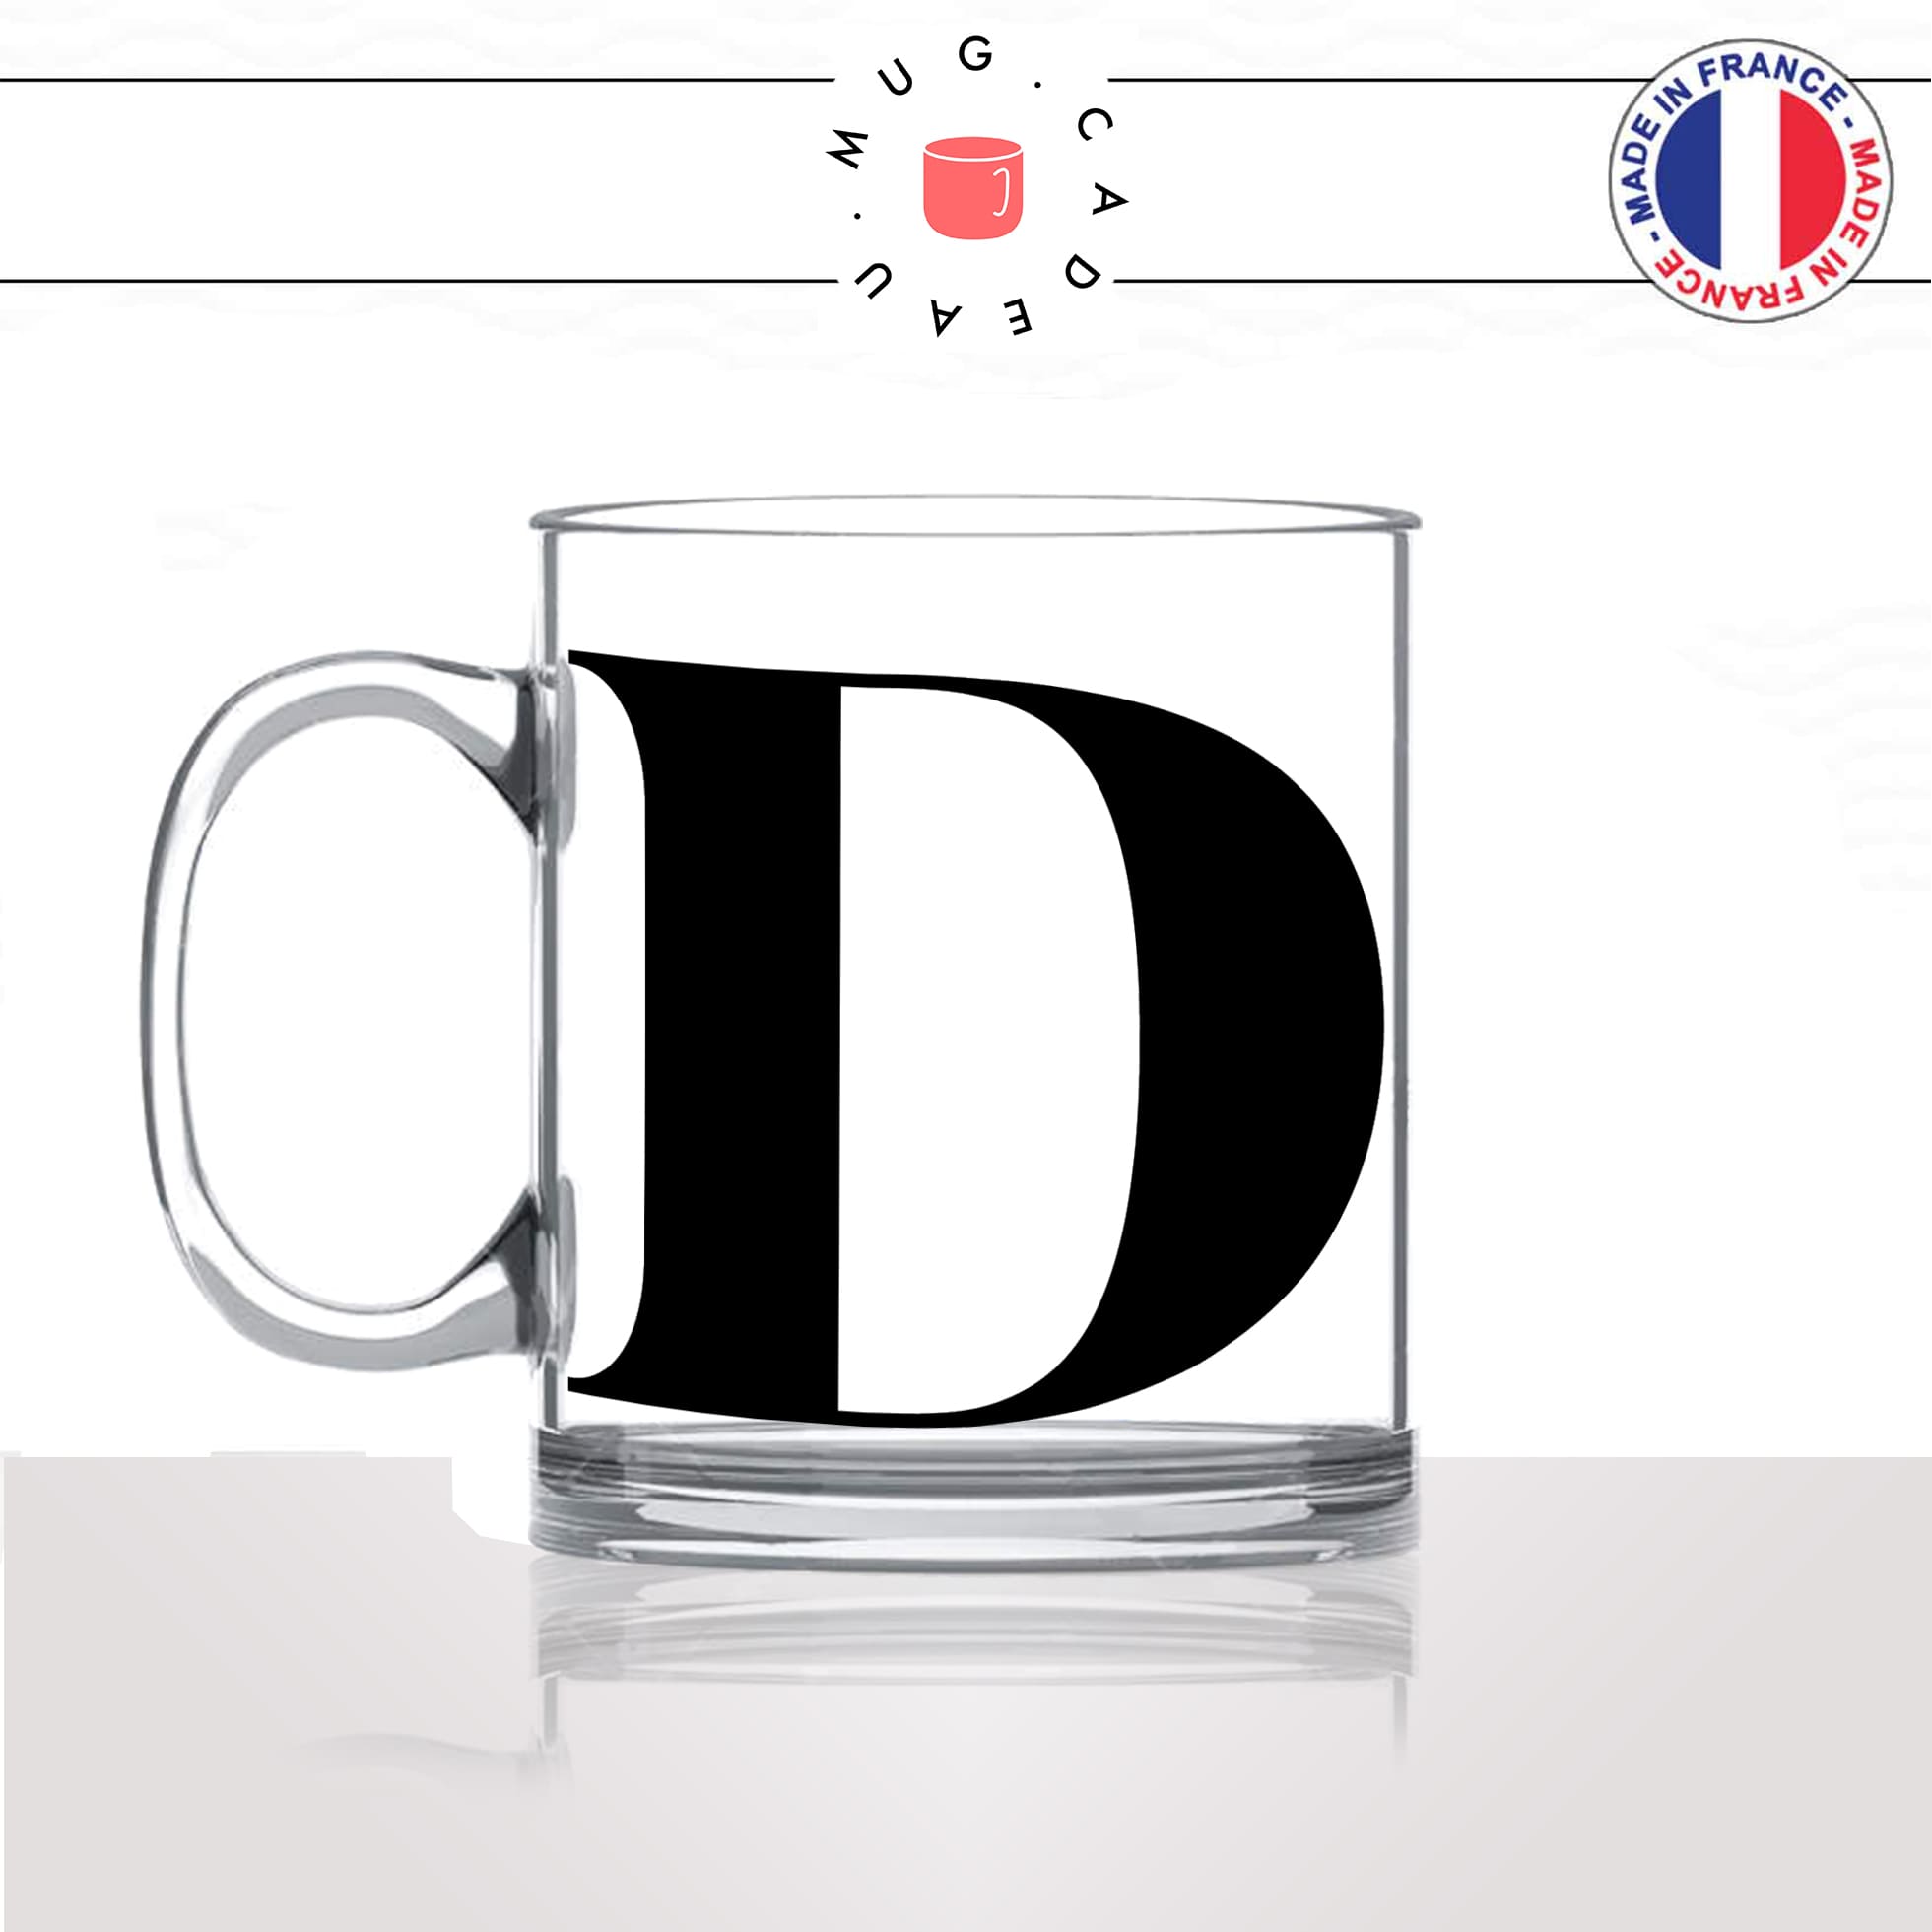 mug-tasse-en-verre-transparent-glass-initiale-D-dorine-dea-dylan-dydy-majuscule-lettre-collegue-original-idée-cadeau-fun-cool-café-thé